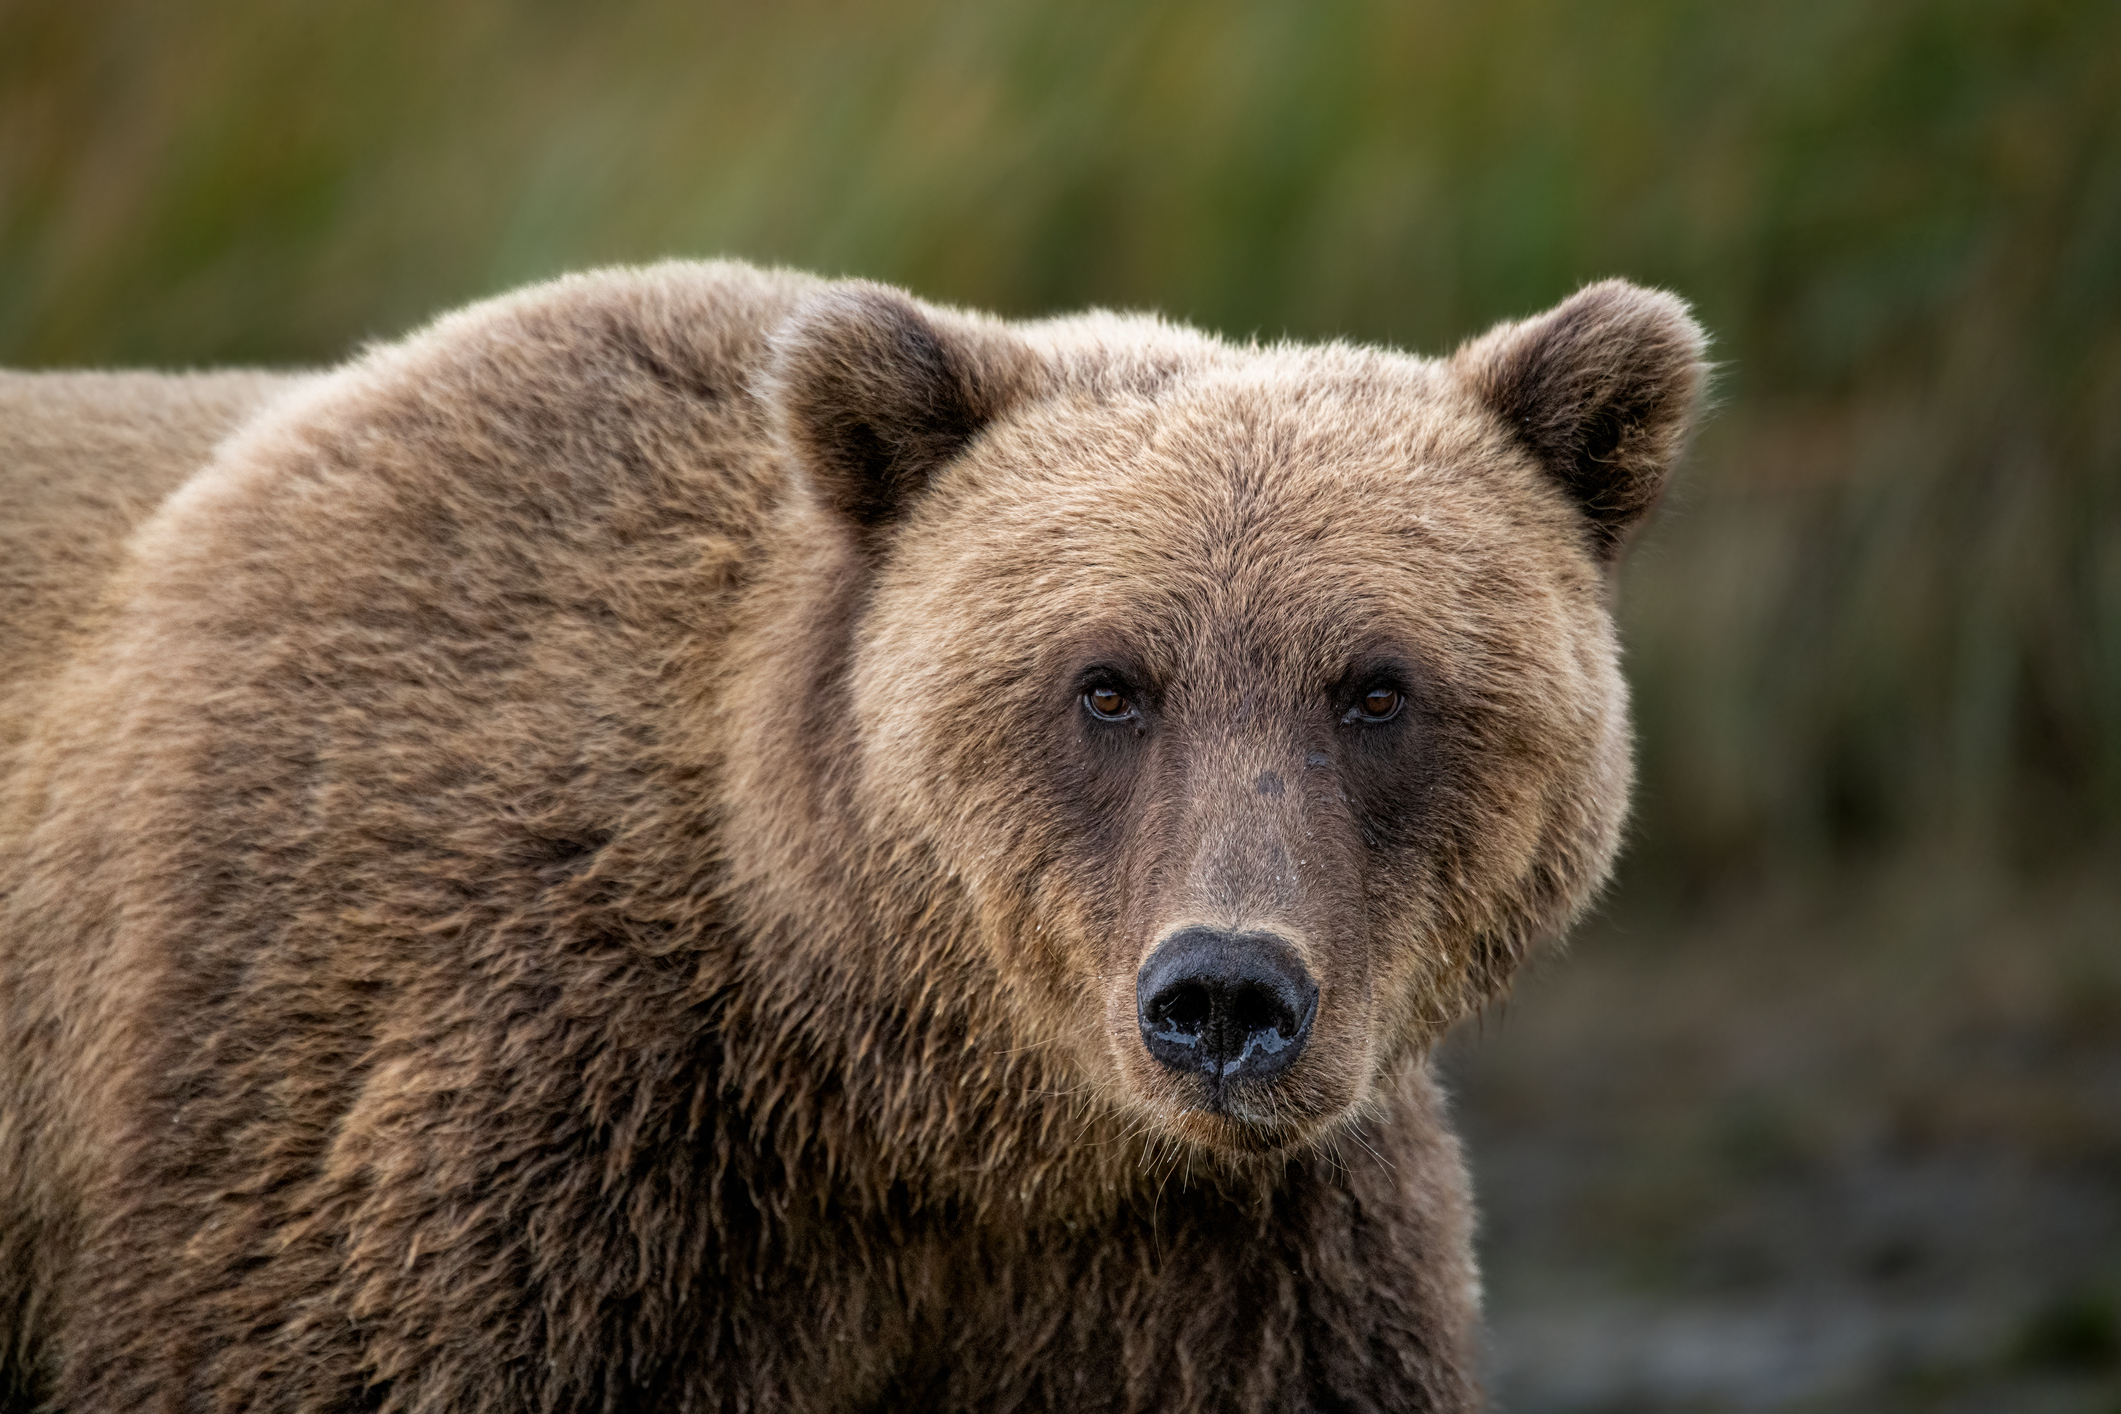 Closeup of a bear